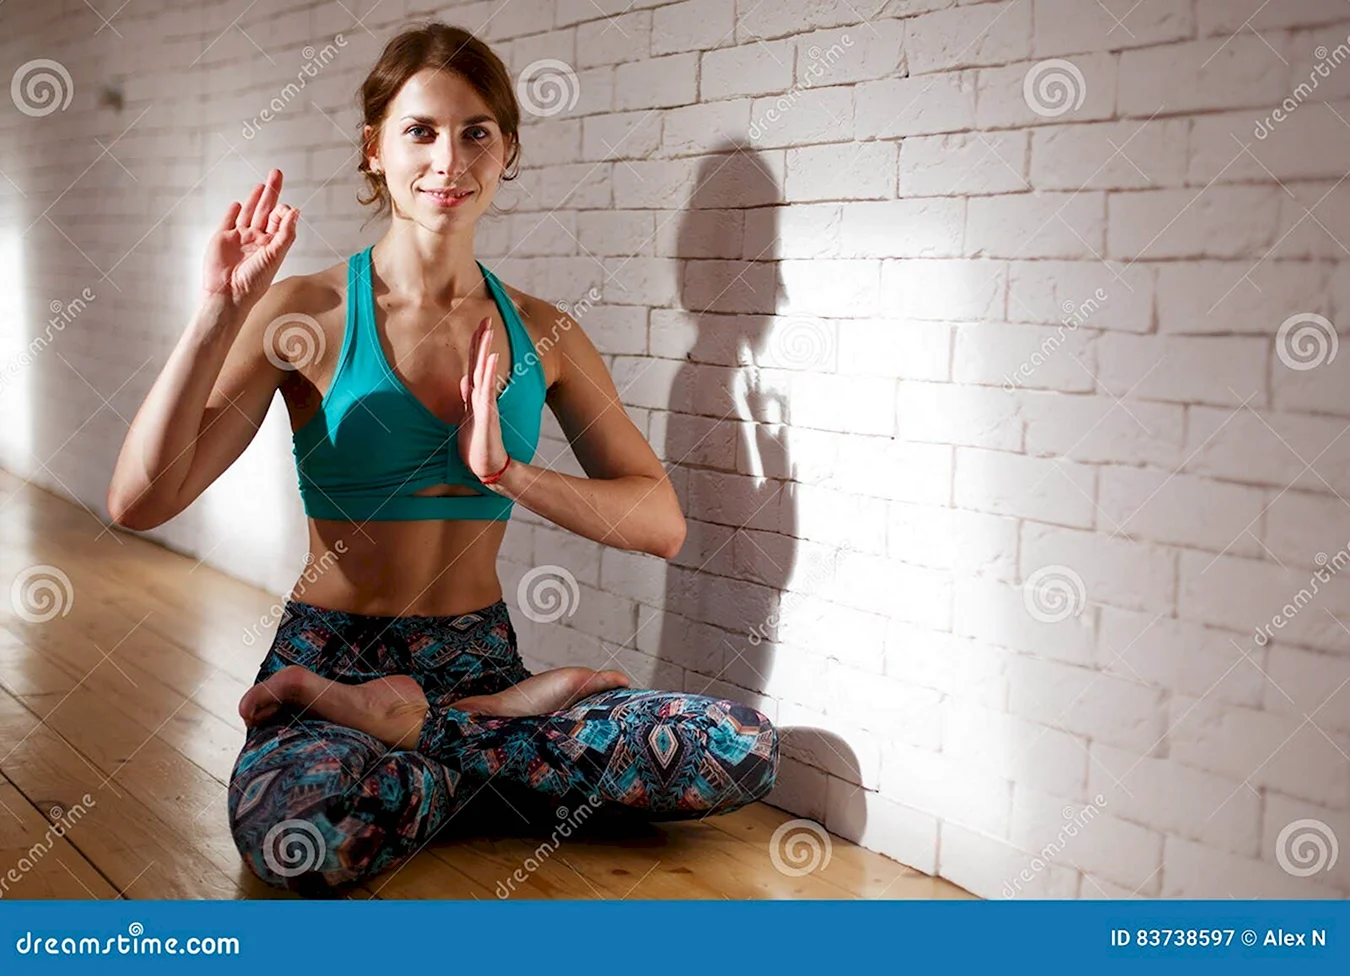 Макияж йога фотосессия